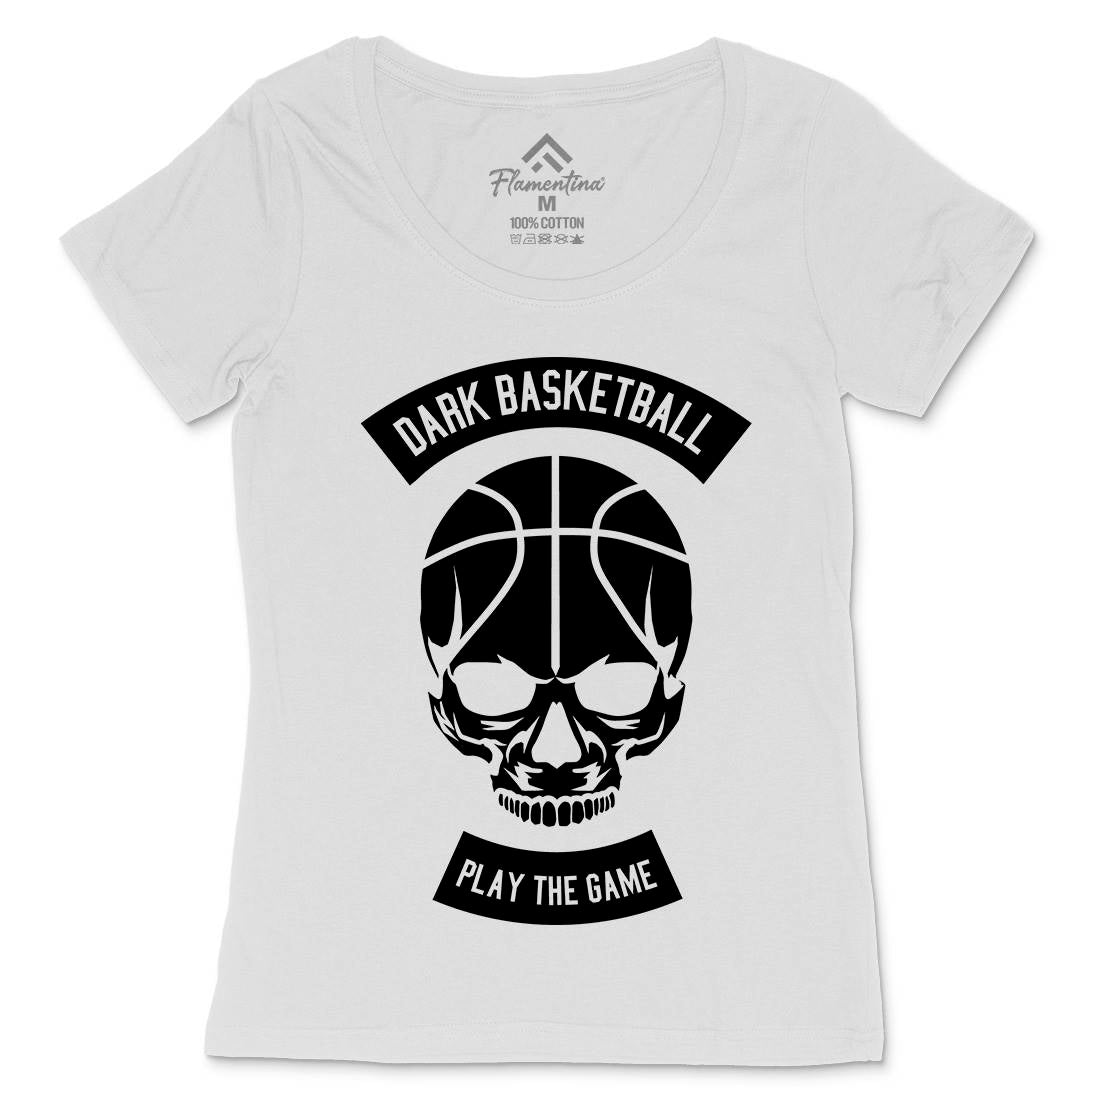 Dark Basketball Womens Scoop Neck T-Shirt Sport B525